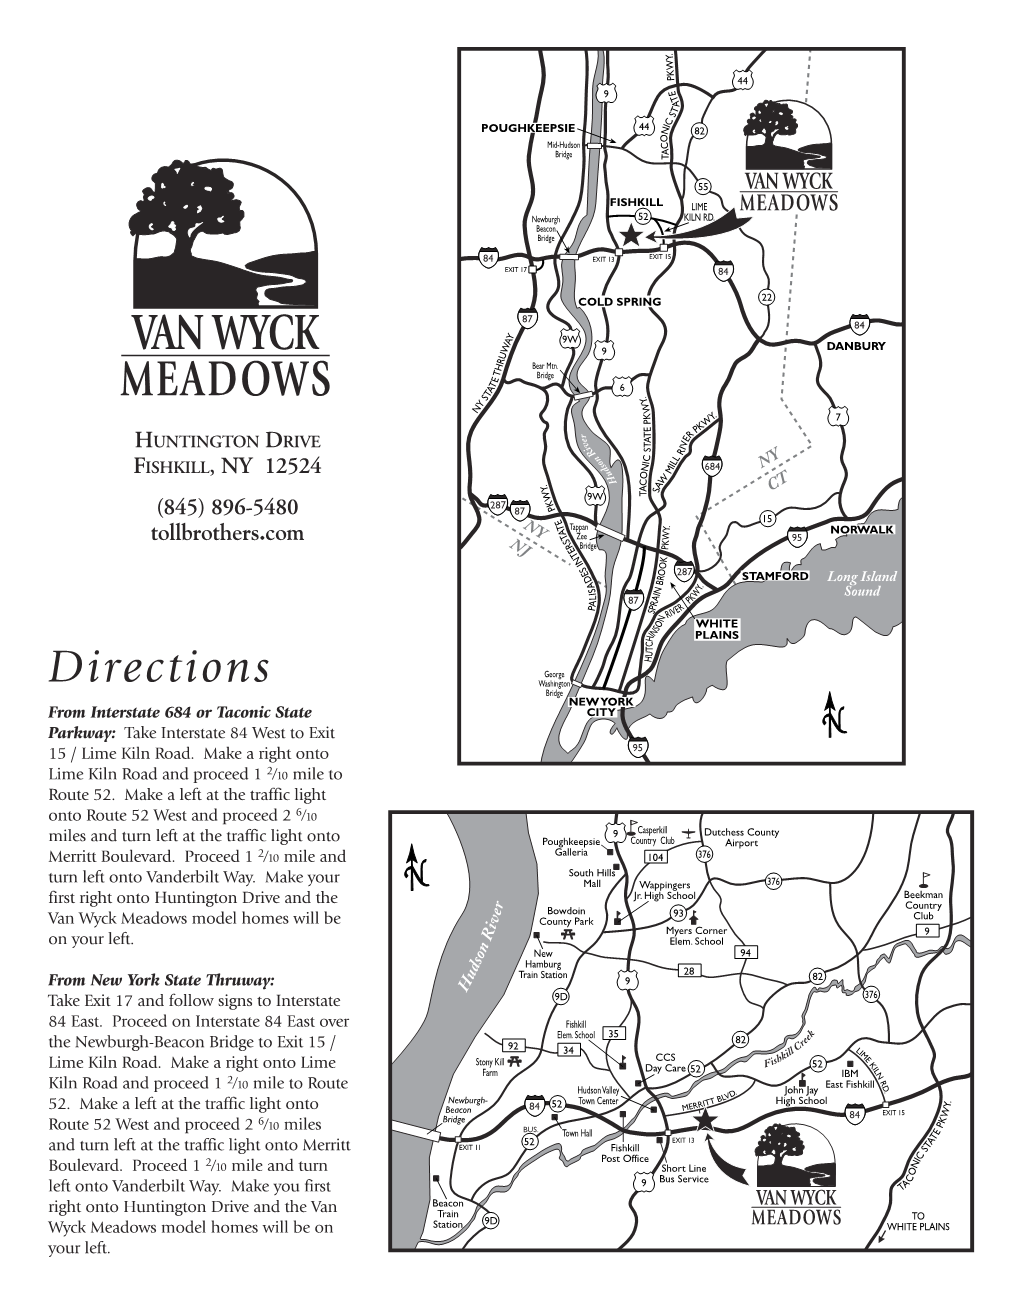 Van Wyck Meadows Brochure 9/03